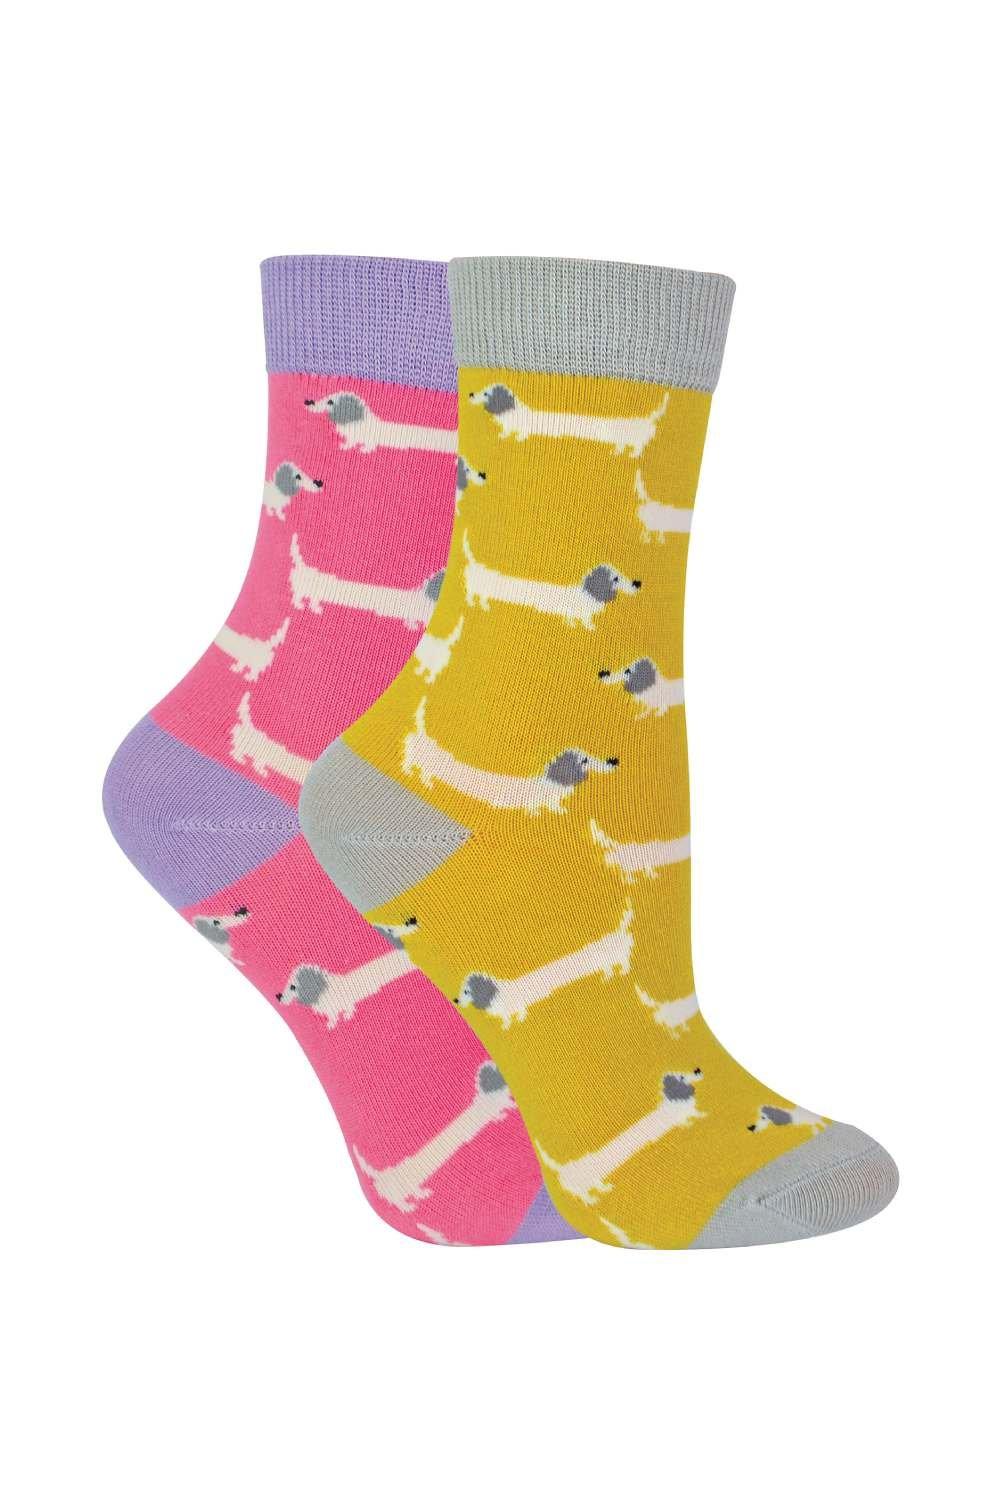 Комплект из 2 носков с животными | Бамбуковые носки с необычным узором Miss Sparrow, желтый фото